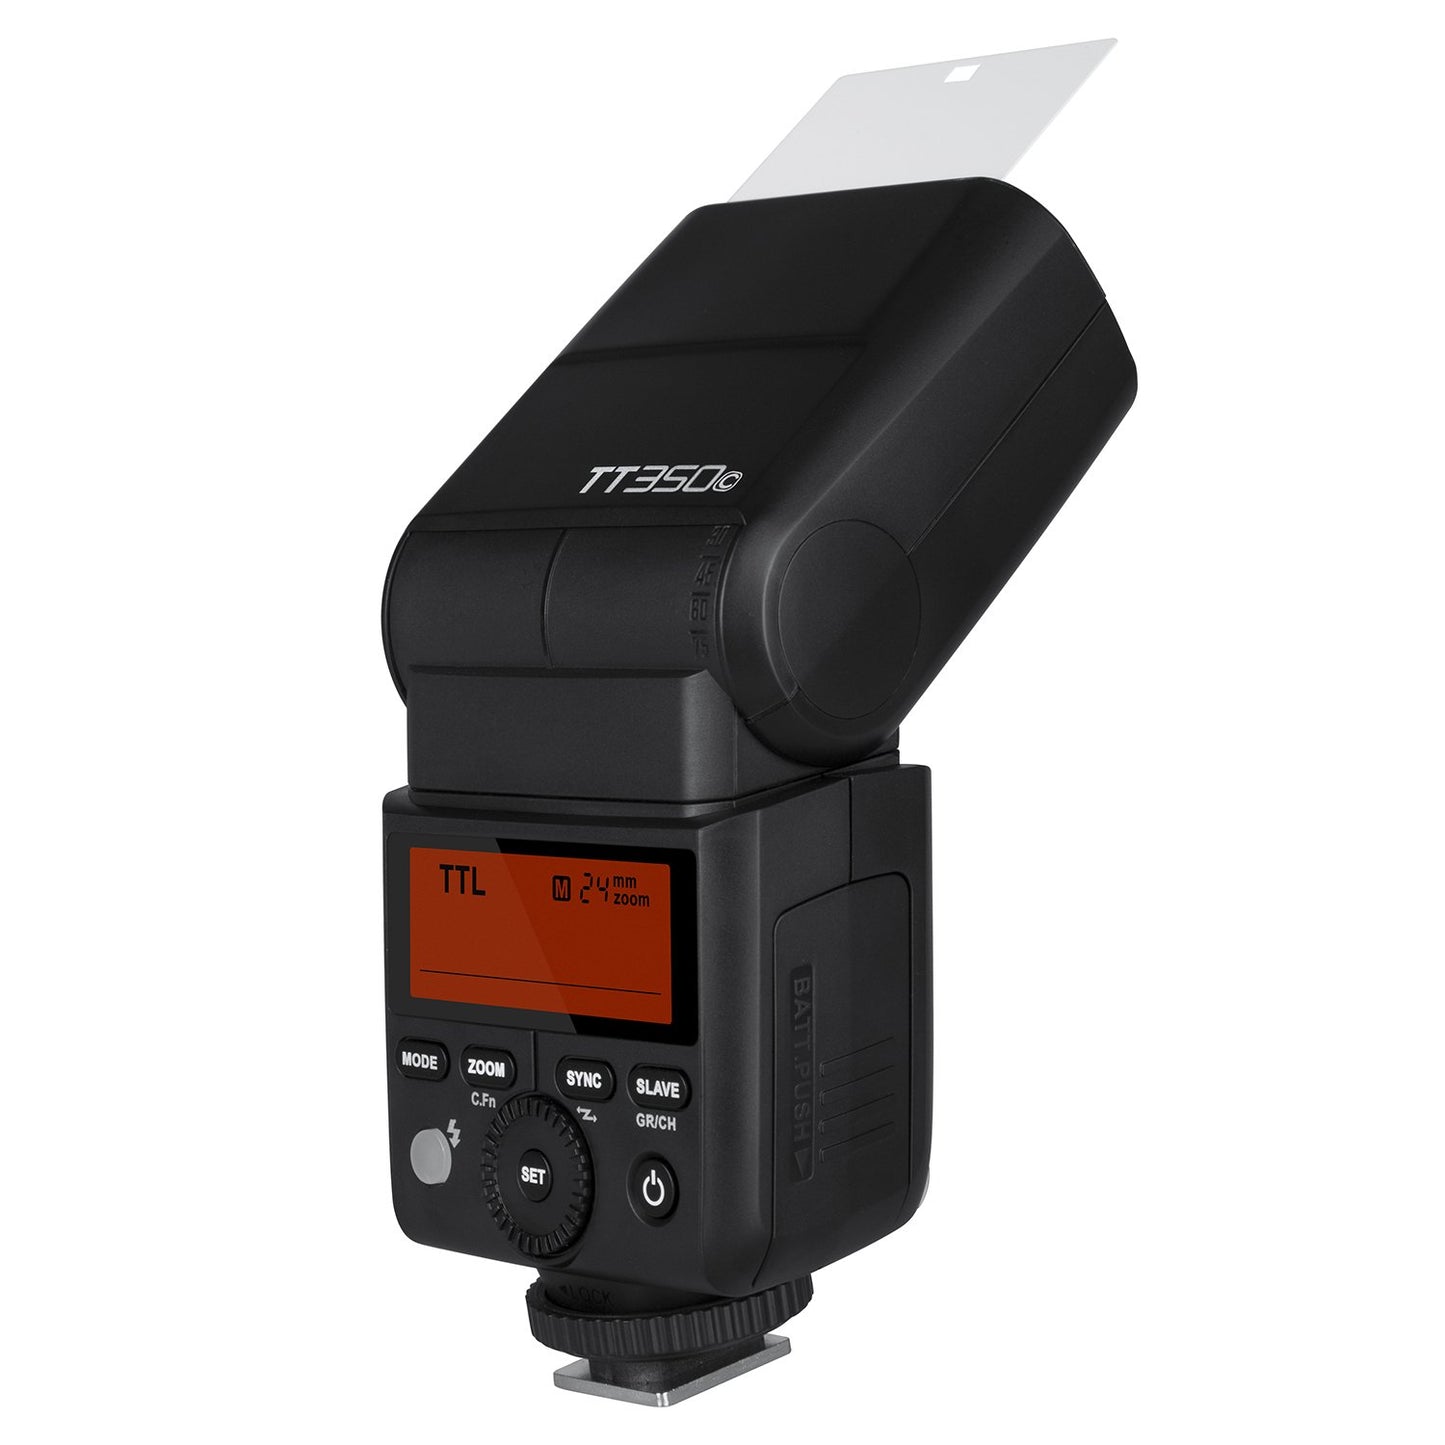 Godox TT350C Mini Speedlite Flash TTL for Canon HSS GN36 1/8000S